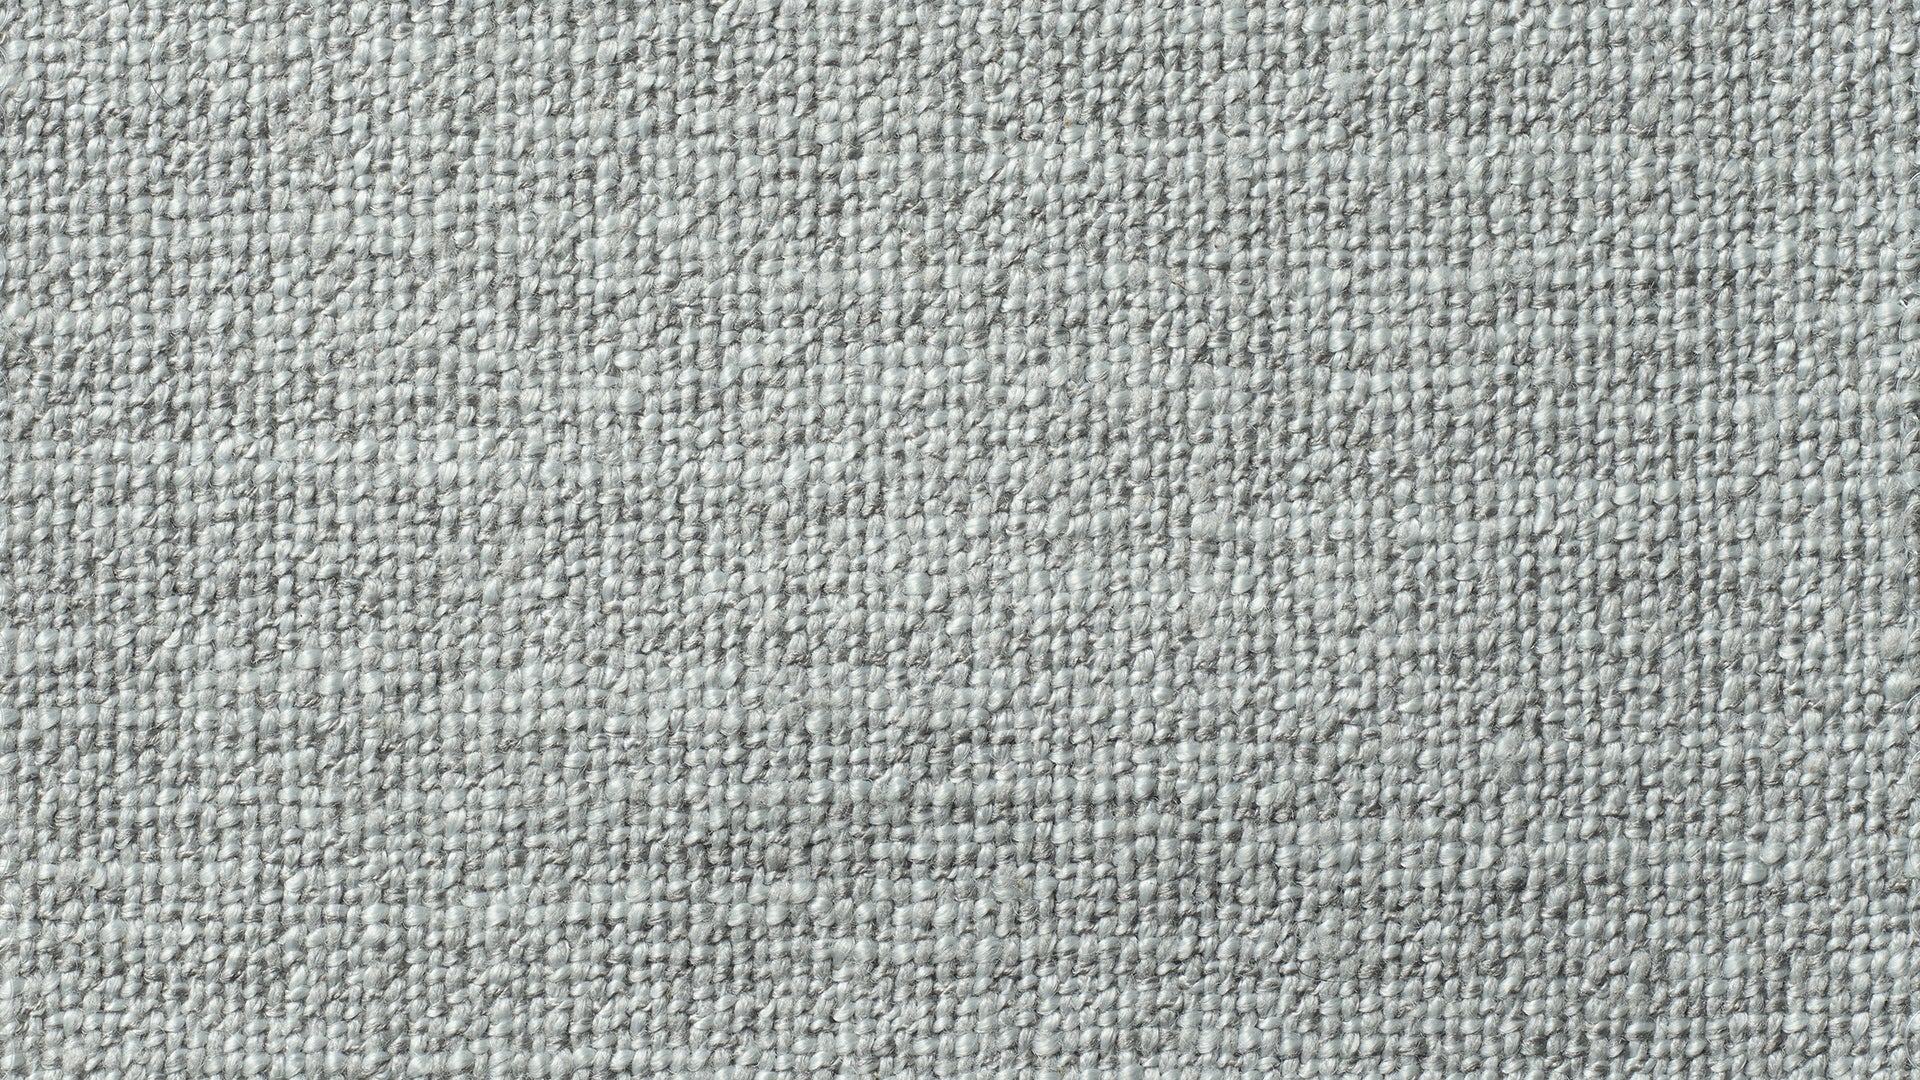 Swatch Koala LiveLife ™ Performance Fabric - Image 1